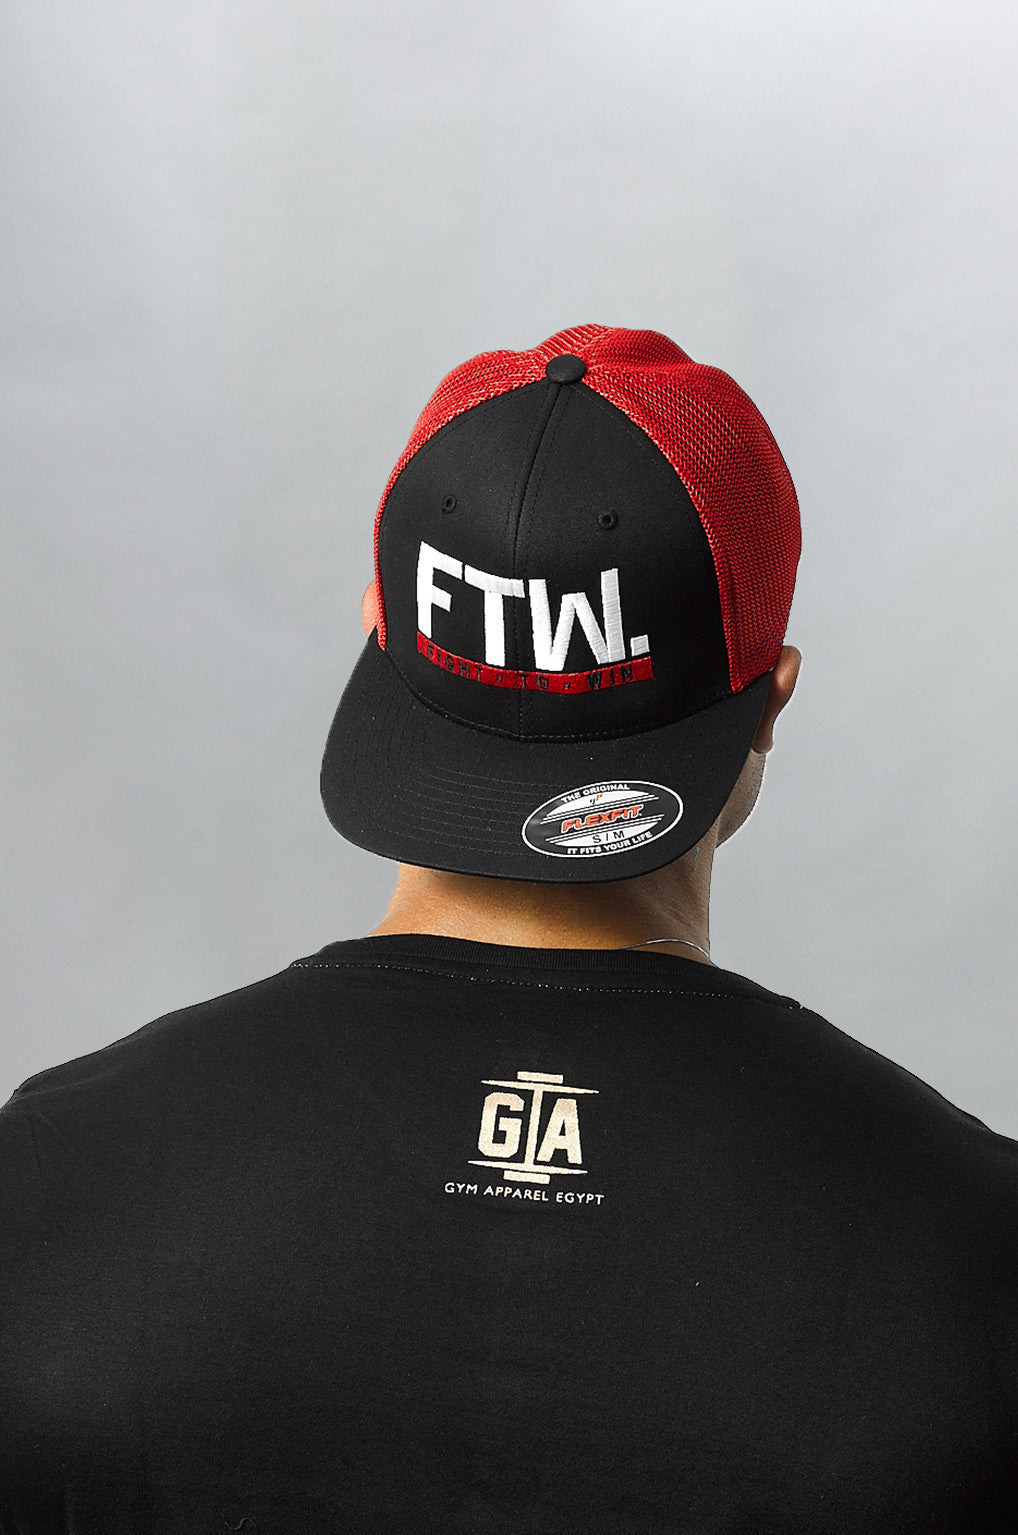 "FTW." Mesh Trucker – Black/Red - Head Gear - Gym Apparel Egypt